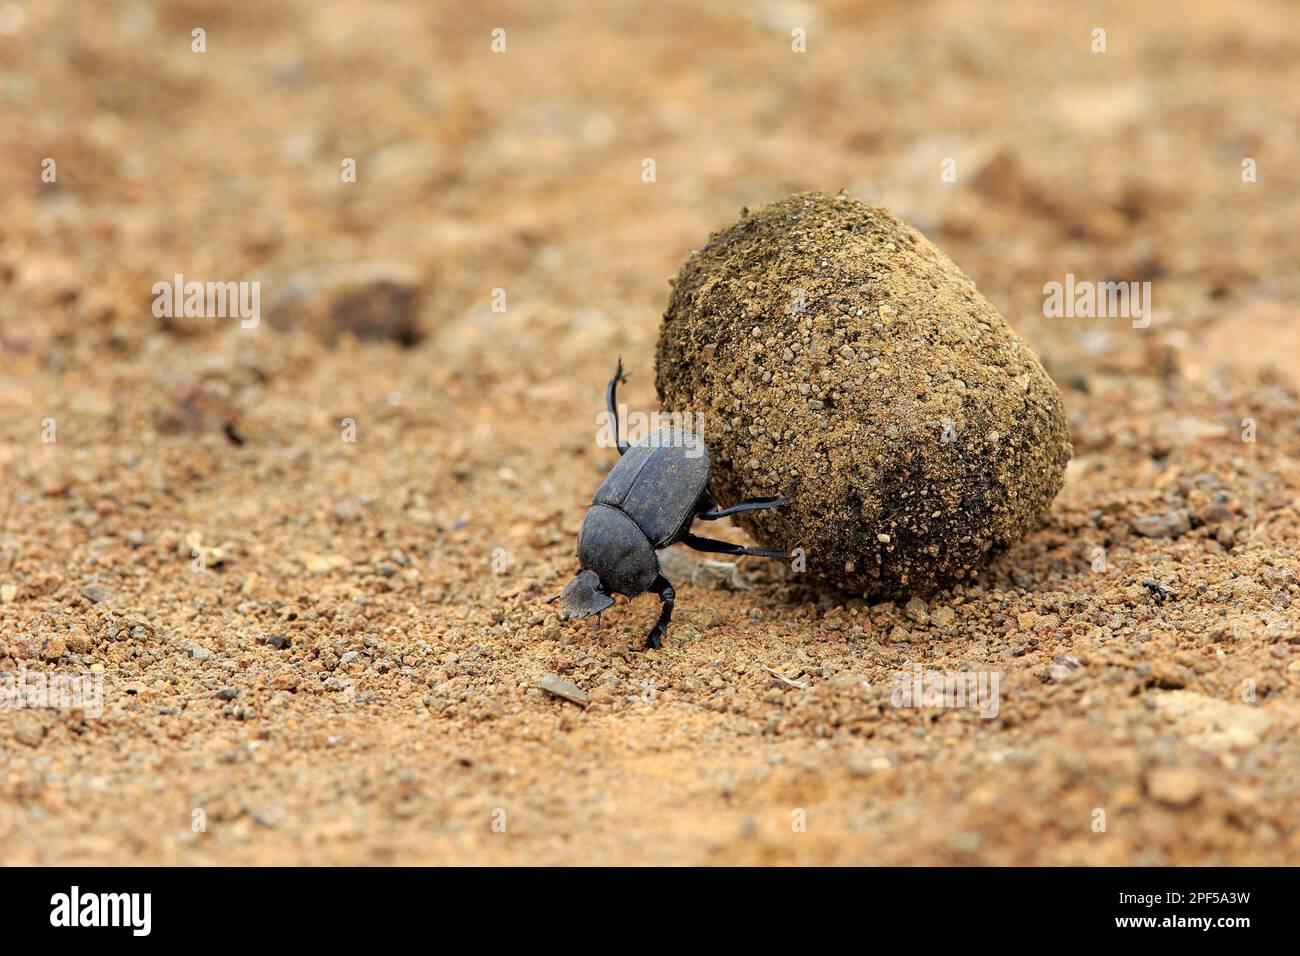 Dung beetle (Scarabaeus sacer), adult rolling elephant dung to lay eggs, Isimangaliso Wetland Park, Kwazulu Natal, dung beetle Stock Photo